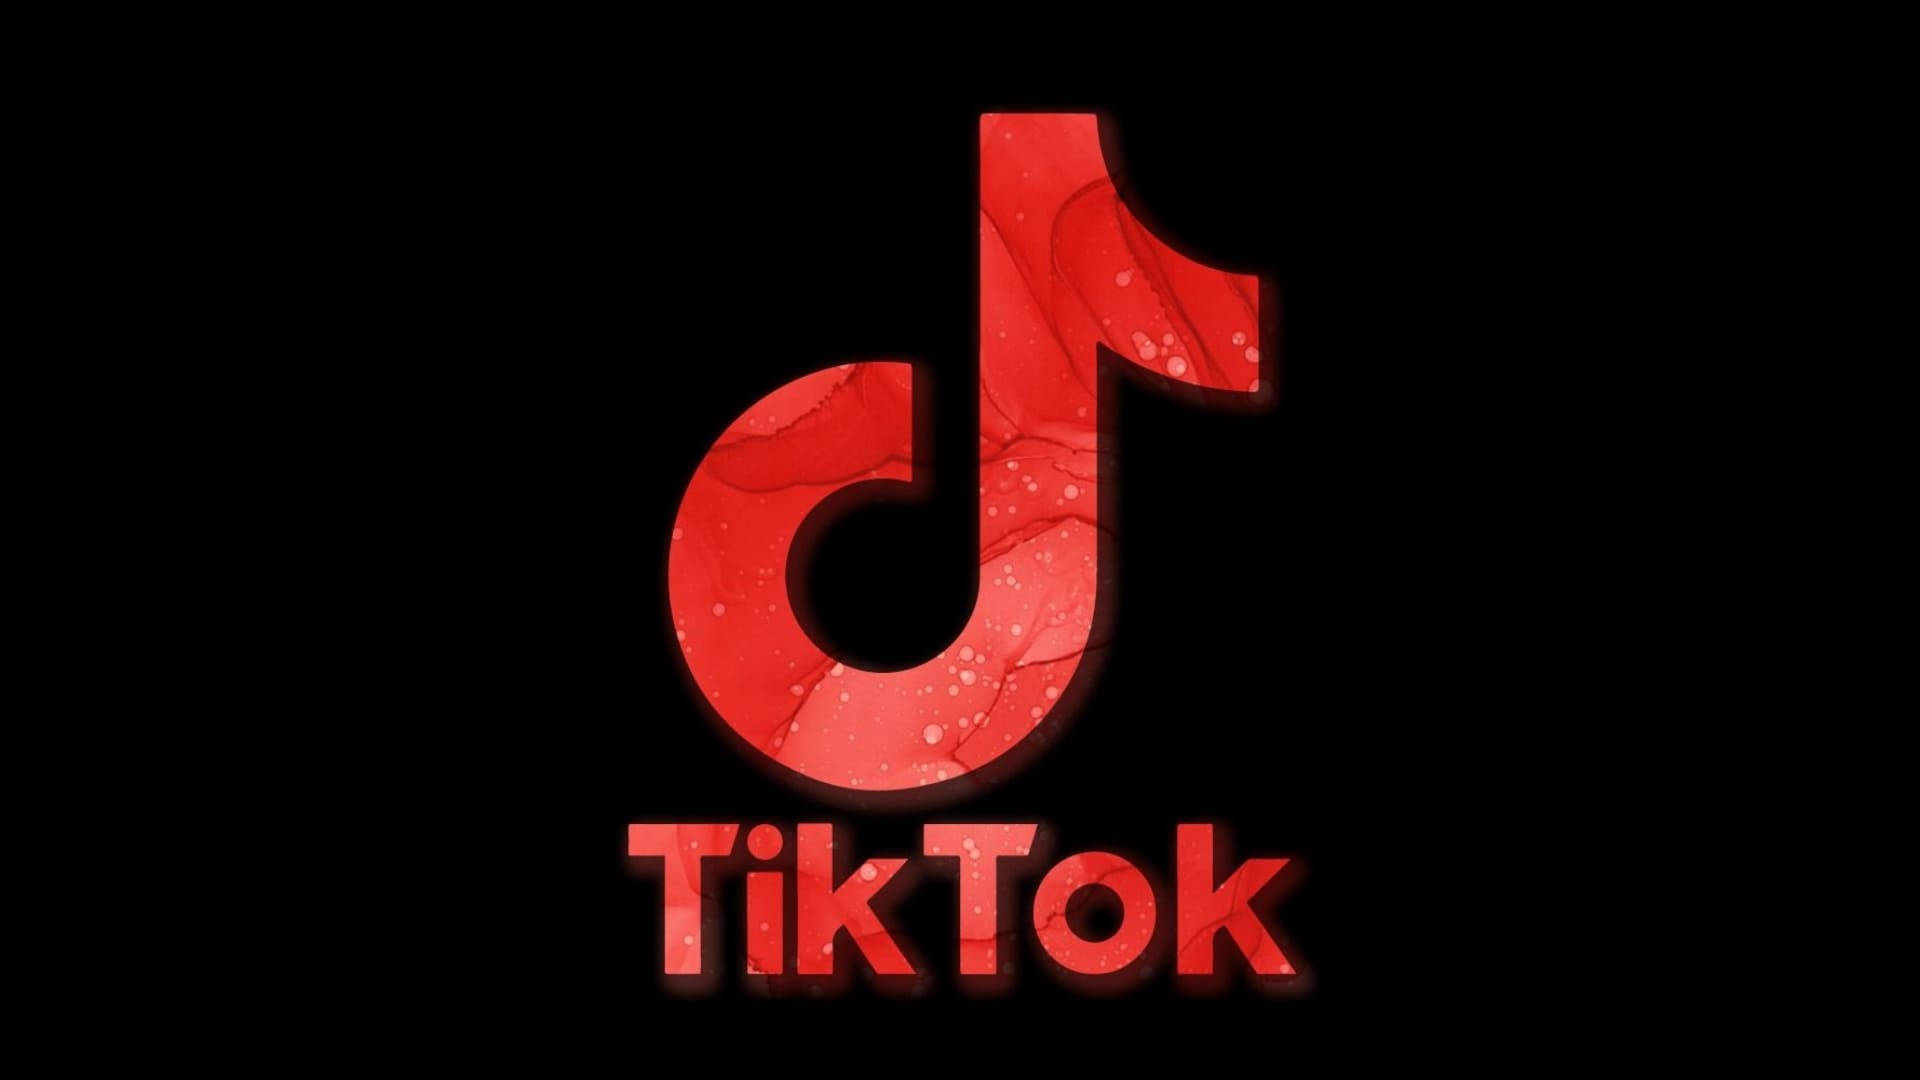 Red Aesthetic Tiktok Logo Background